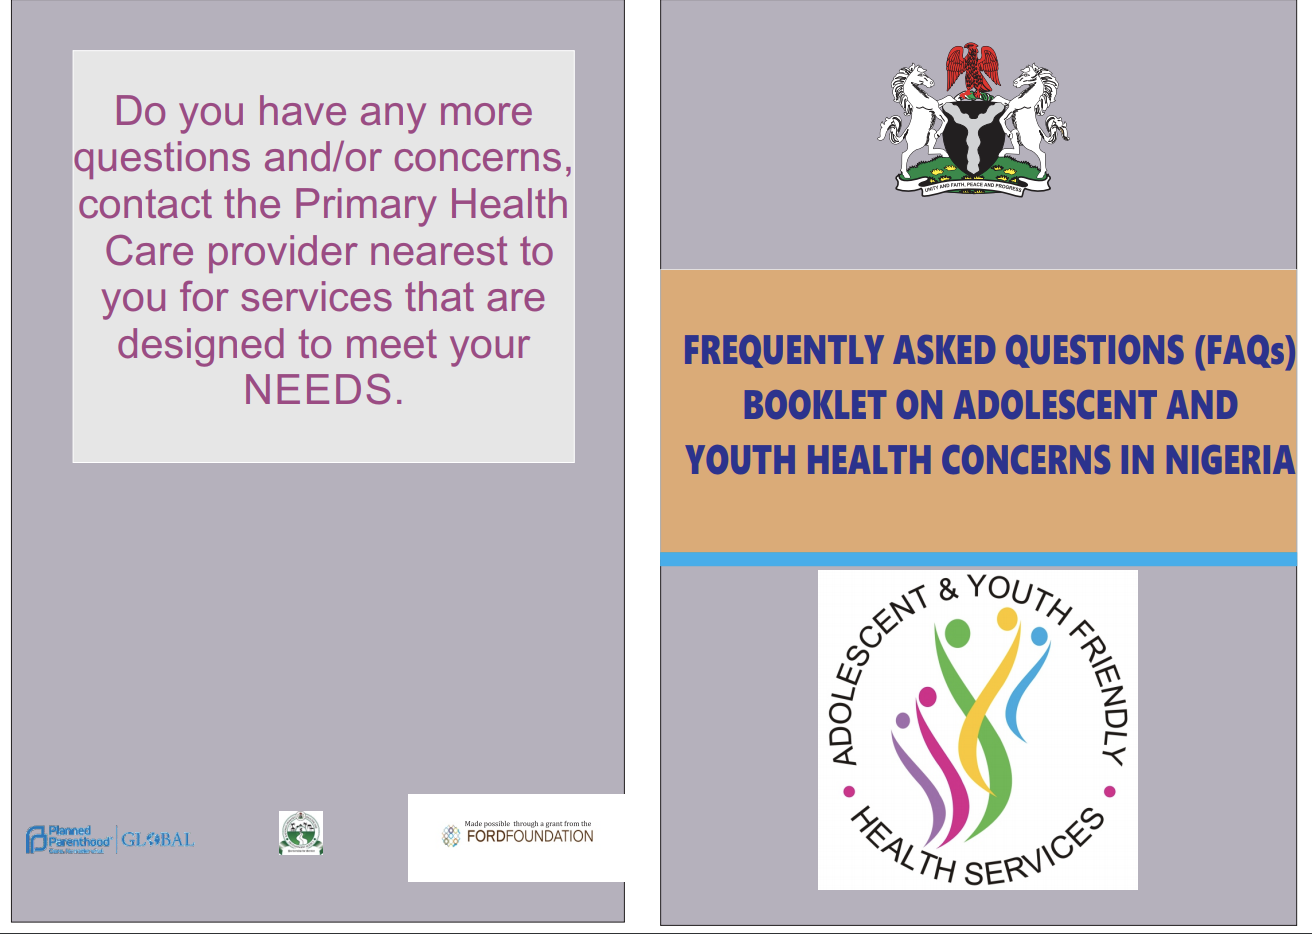 نائجیریا میں نوجوانوں اور نوعمروں کی صحت کے خدشات پر اکثر پوچھے جانے والے سوالات کتابچہ